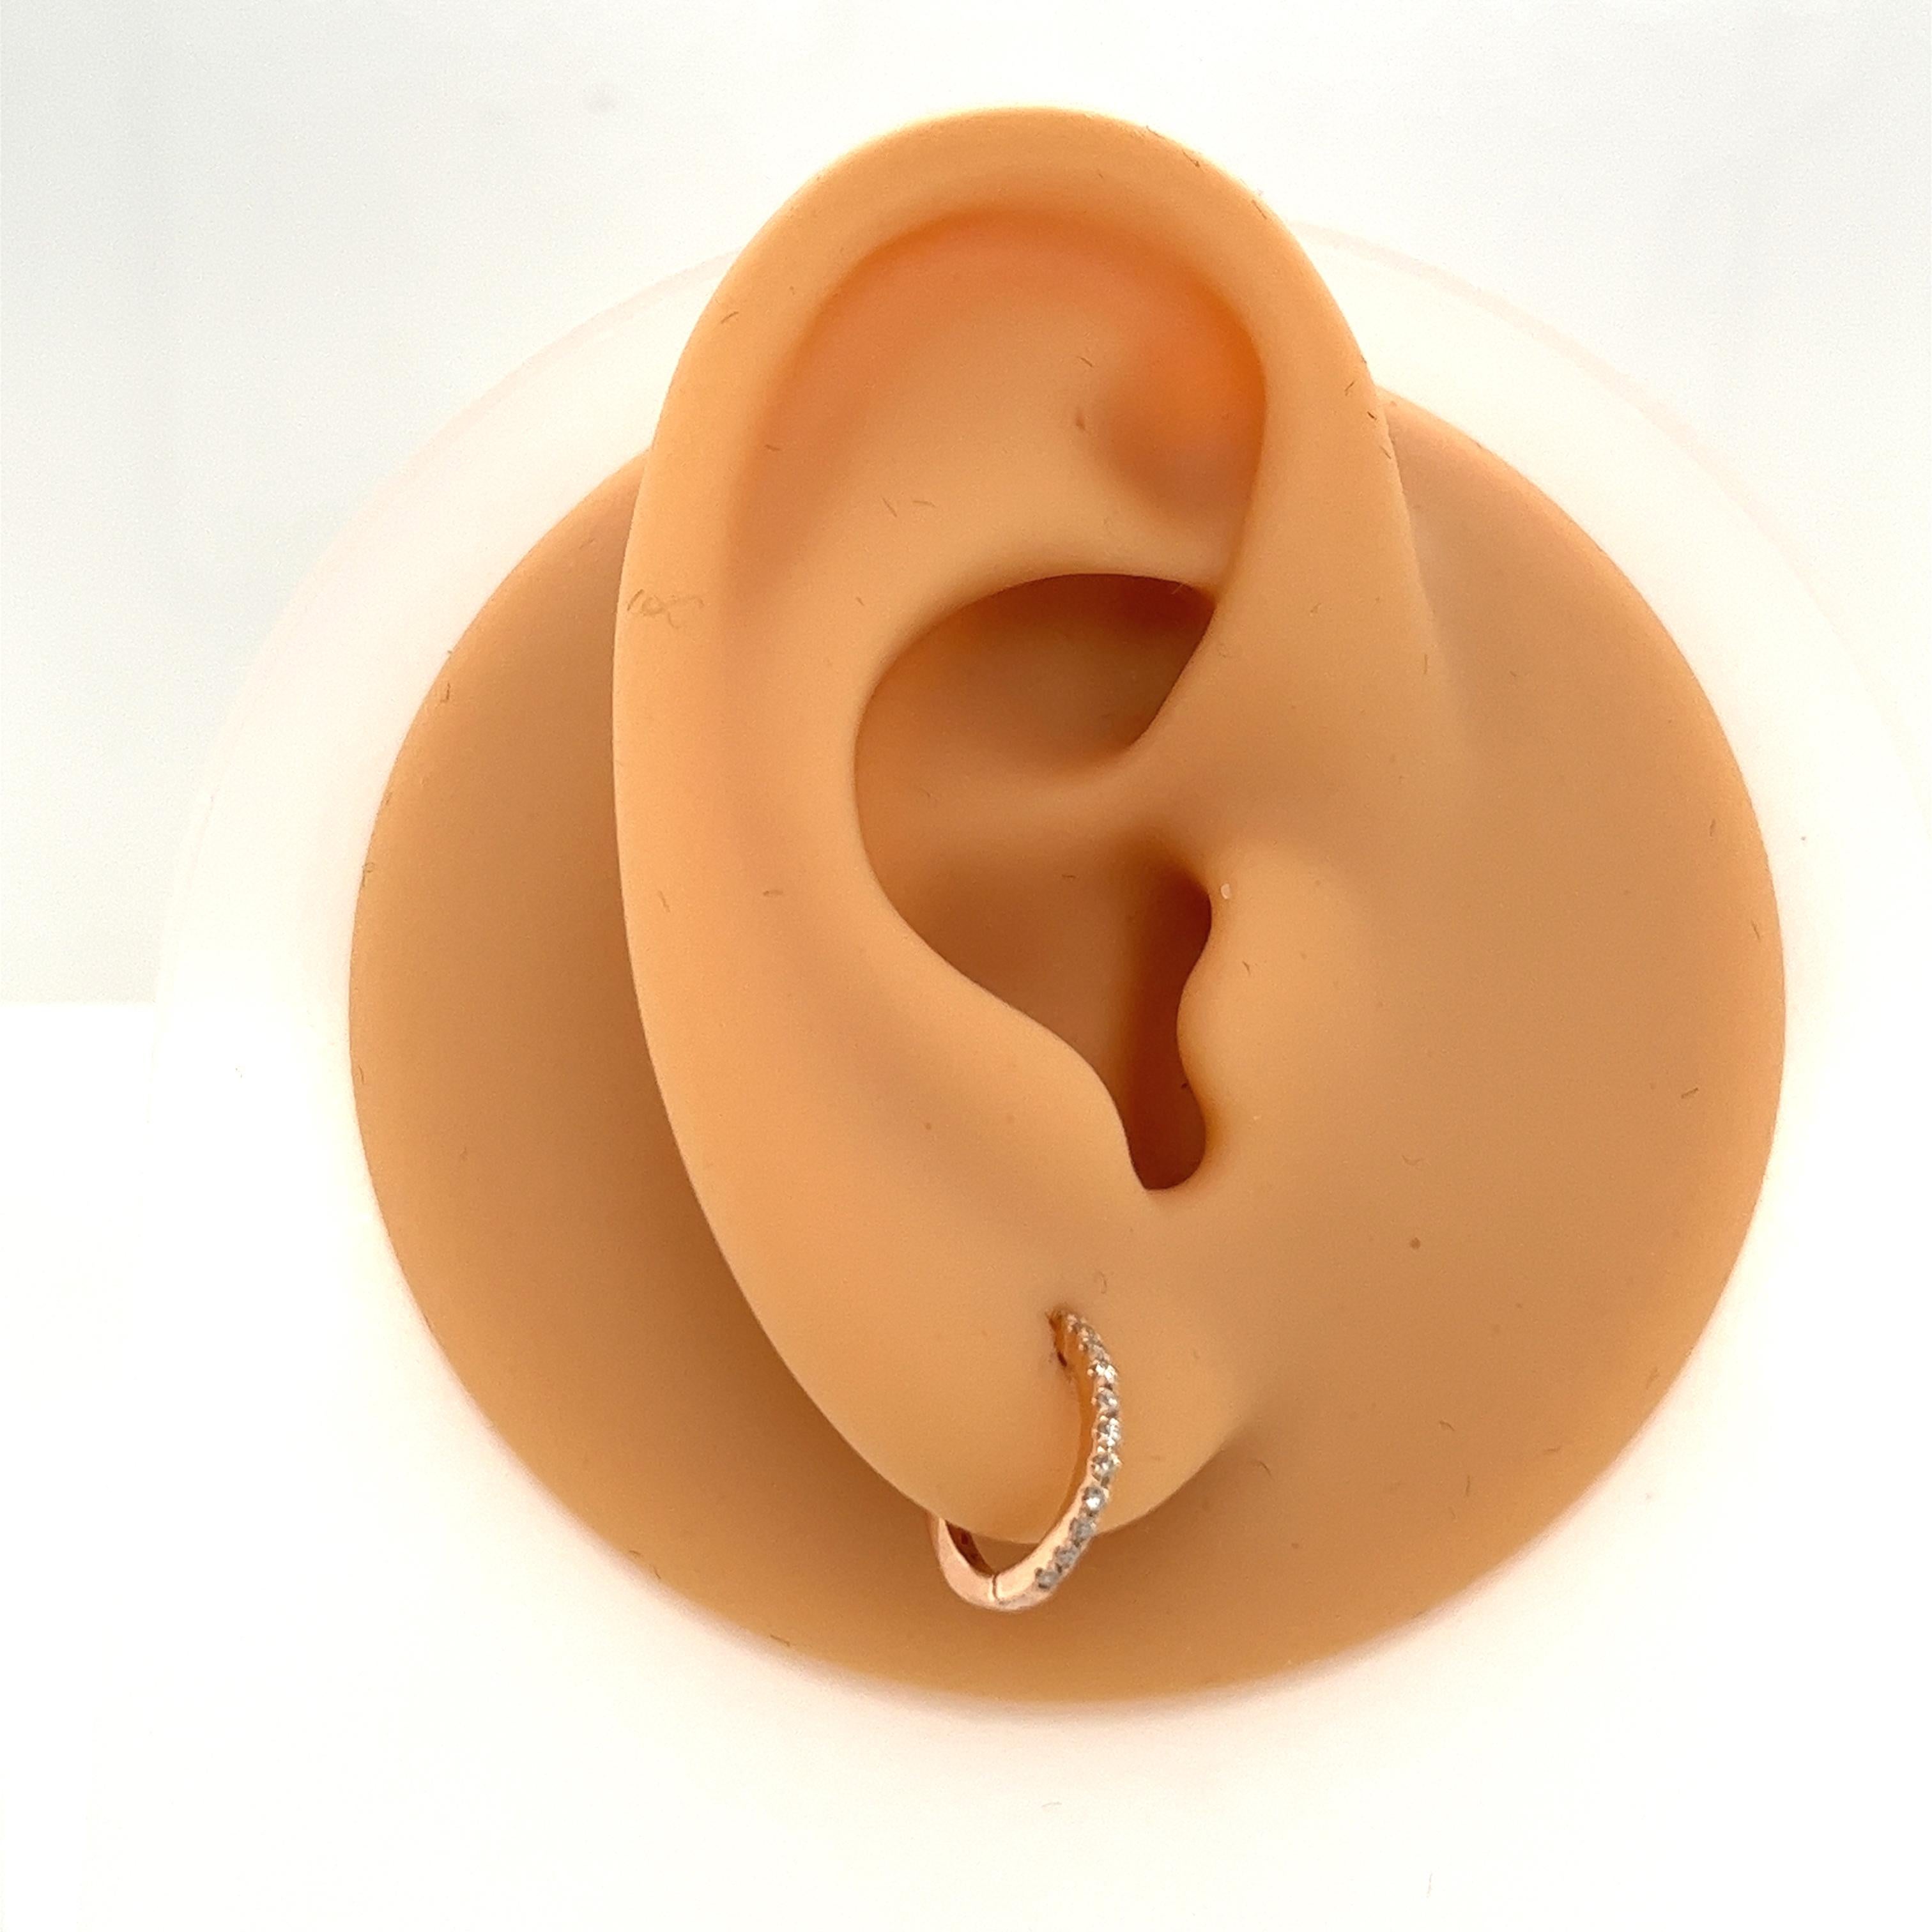 Ces boucles d'oreilles mesurent 11 mm de diamètre et sont serties de 0,09 ct de diamants ronds. Ils constituent un excellent choix pour les femmes qui aiment porter des bijoux à la fois classes et élégants. Ces boucles d'oreilles sont un choix